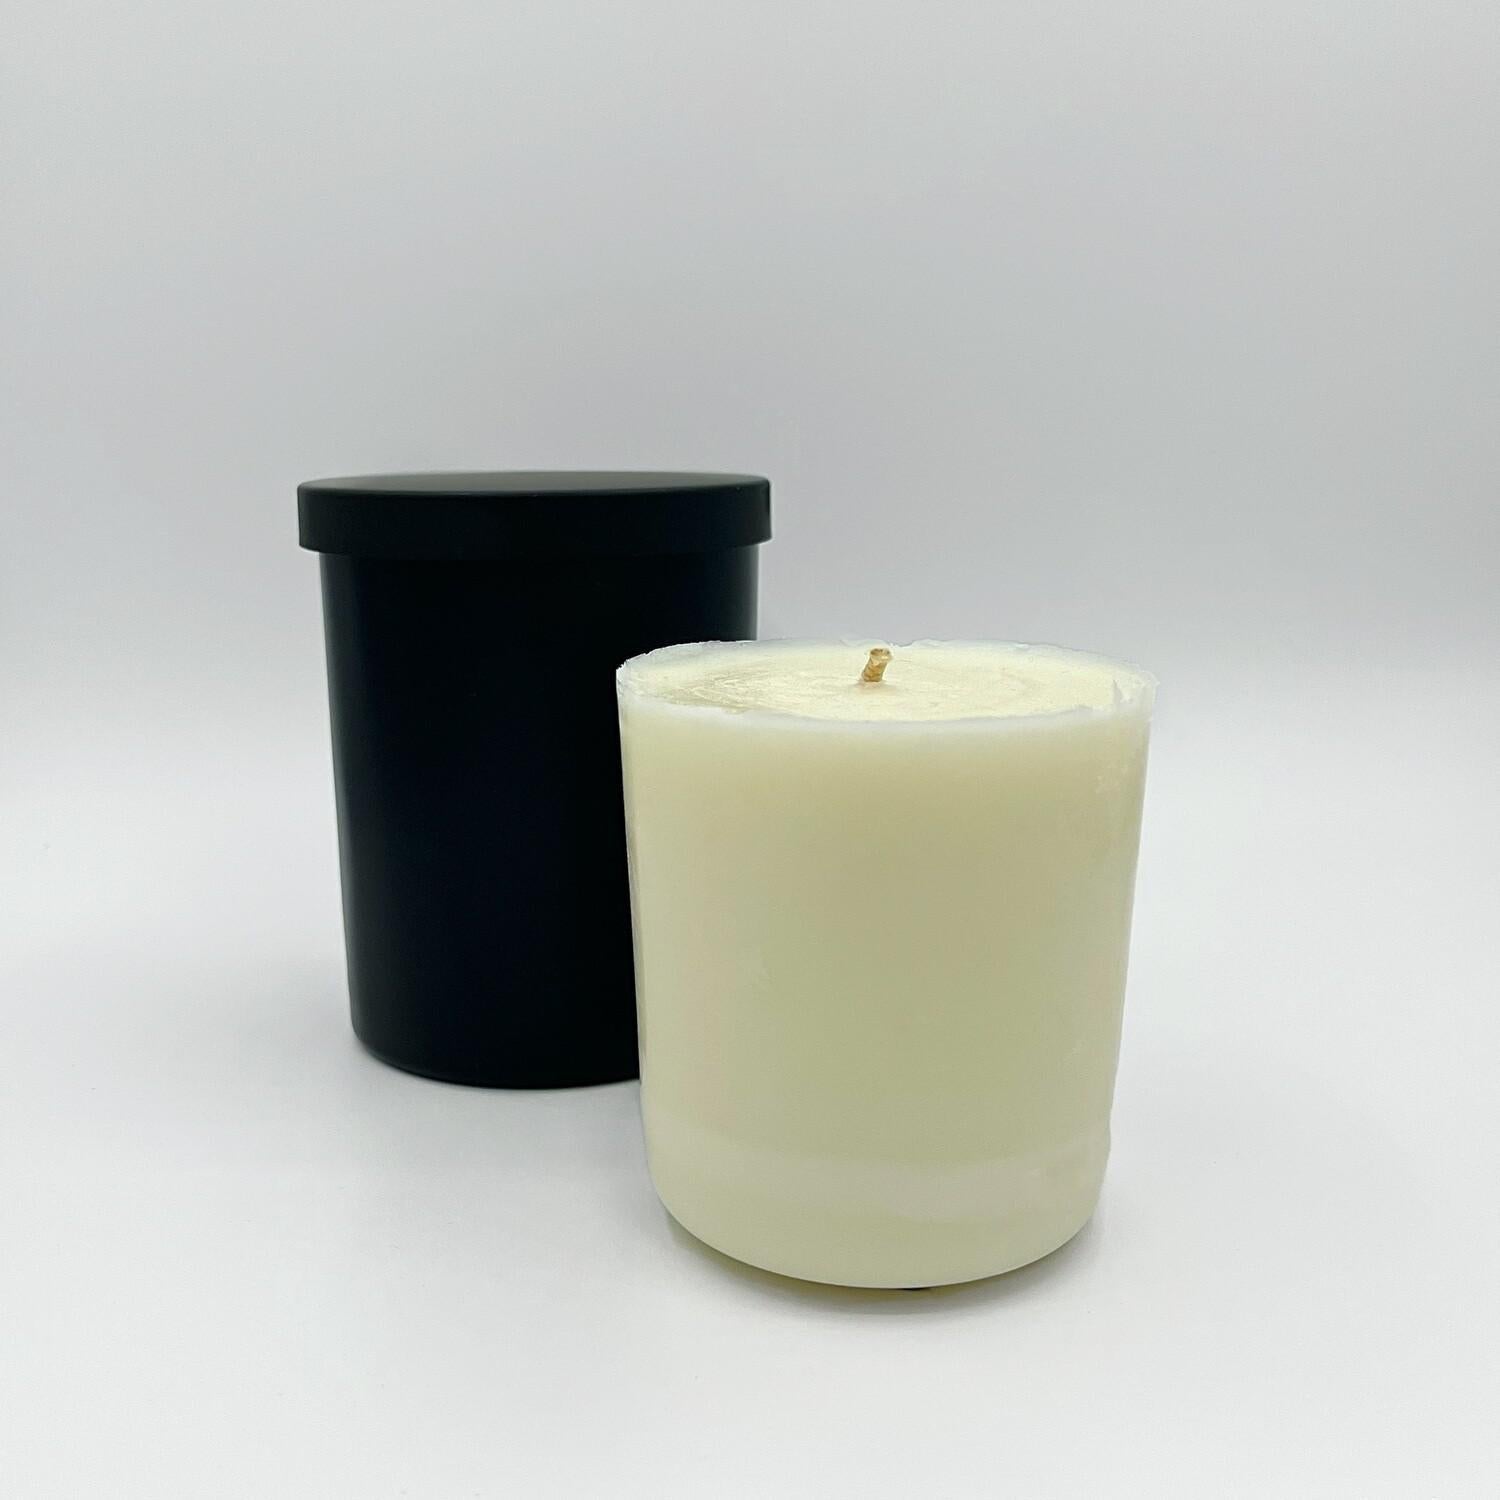 Premium Wax Candle | Arctic Aura